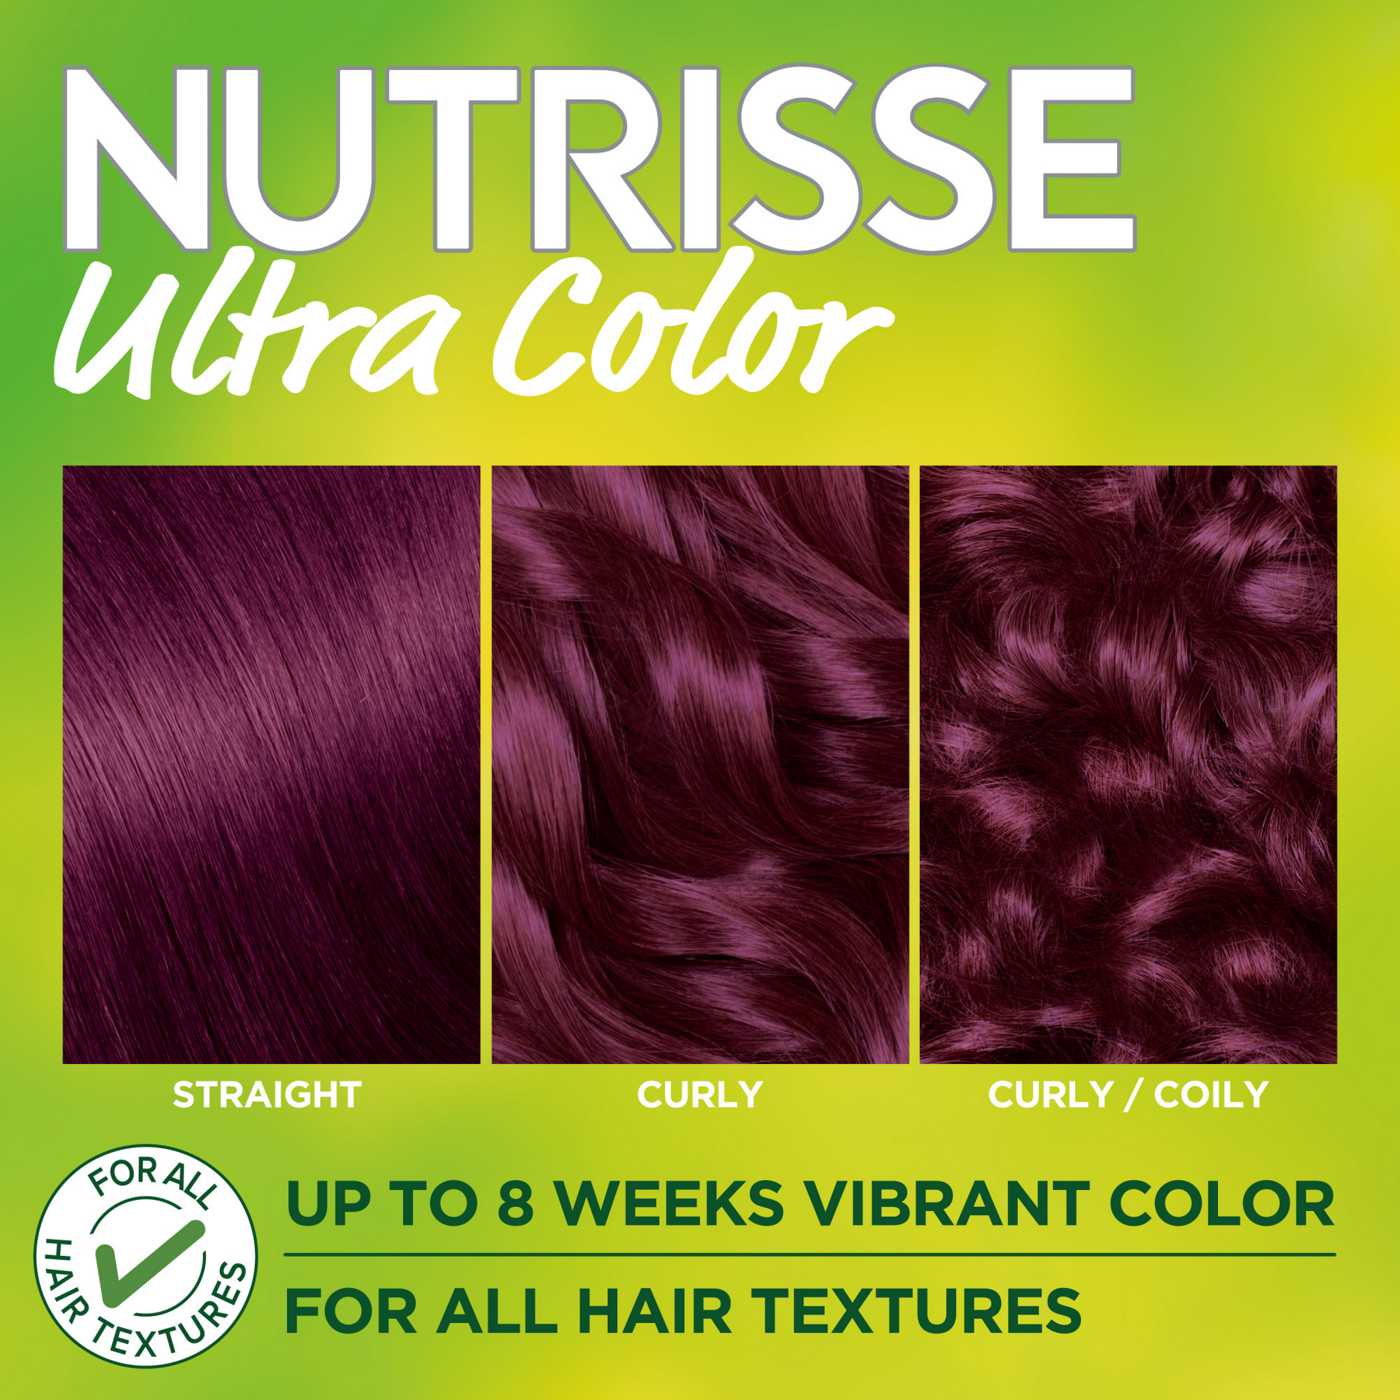 Garnier Nutrisse Ultra Color Nourishing Bold Permanent Hair Color Creme V2  Dark Intense Violet - Shop Hair Color at H-E-B